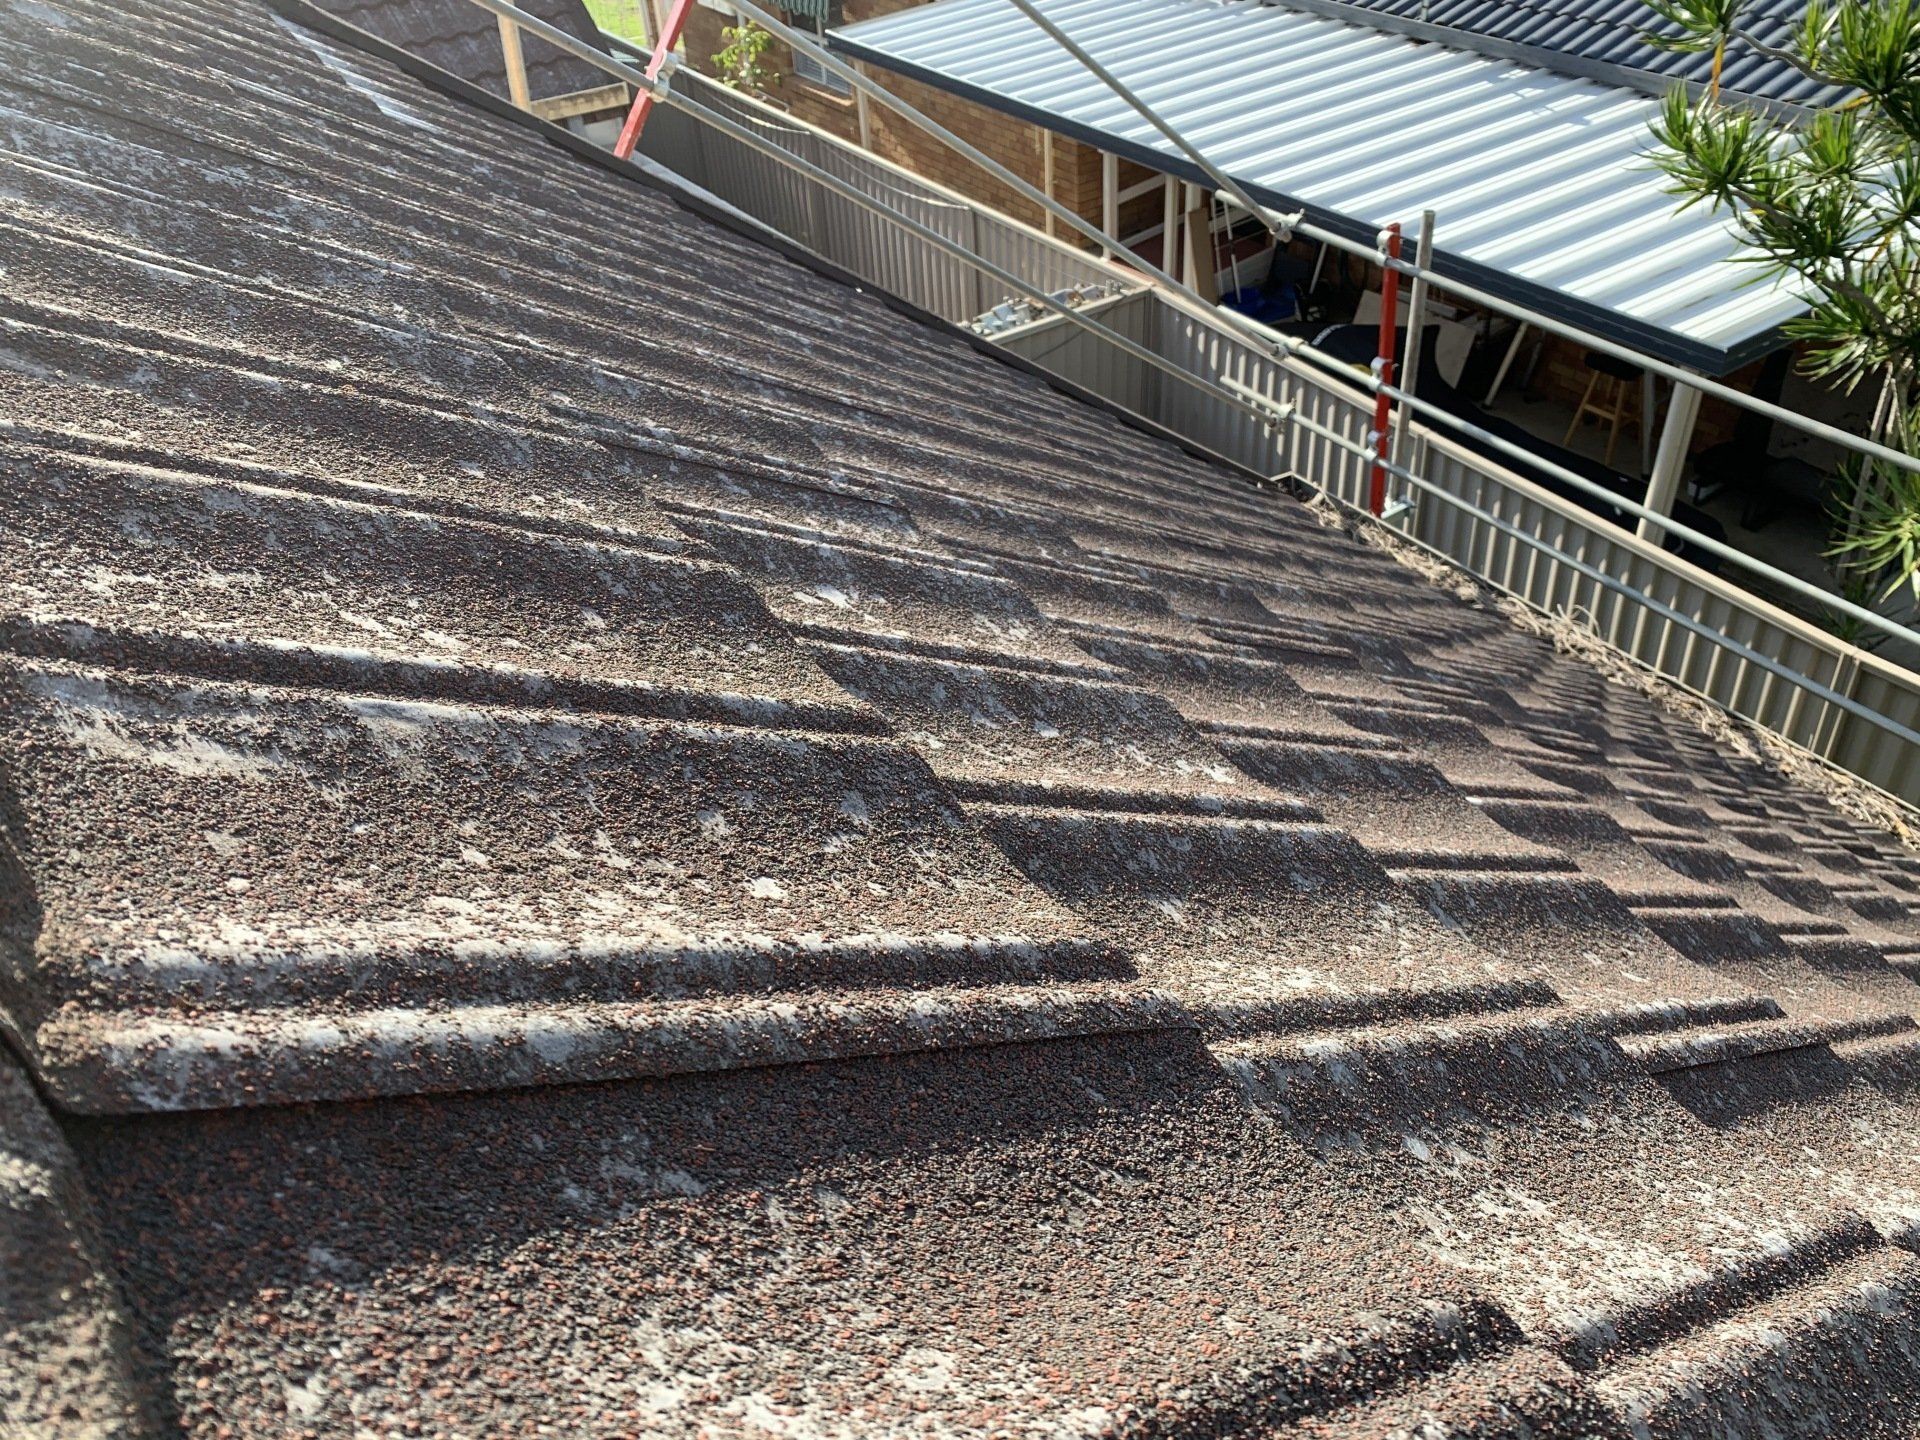 Decromastic metal roof tiles